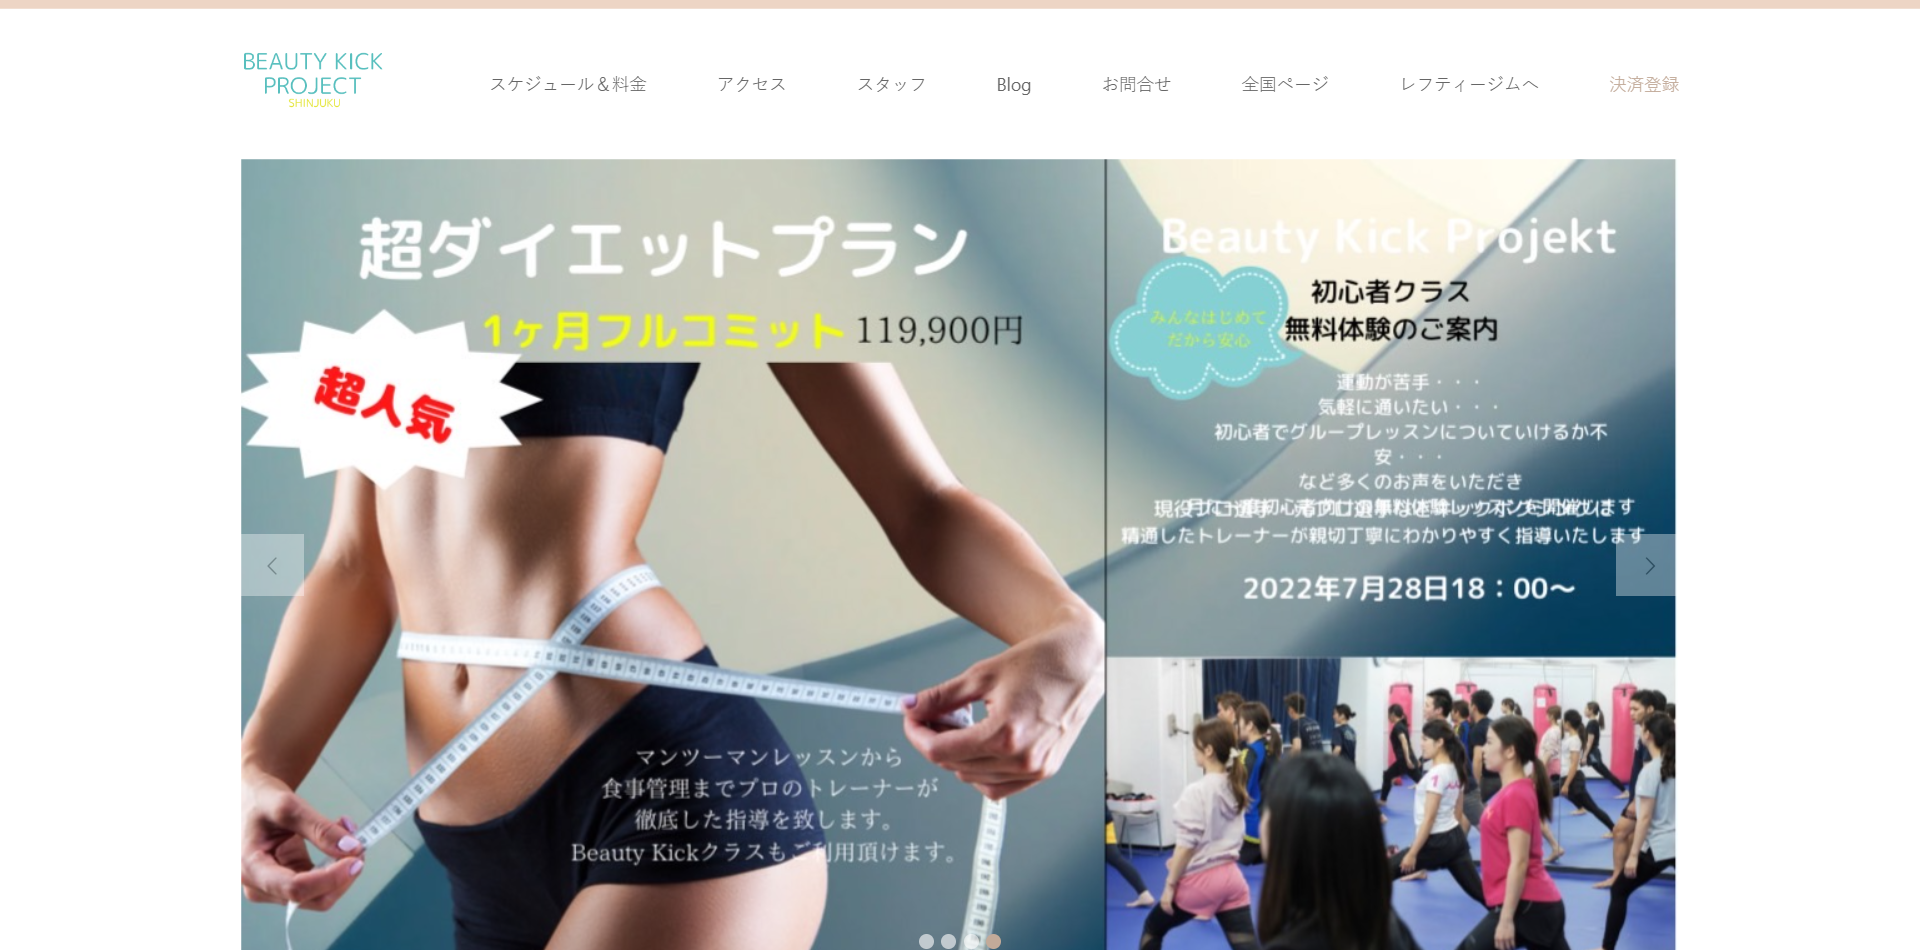 Beauty Kick Project Shinjuku